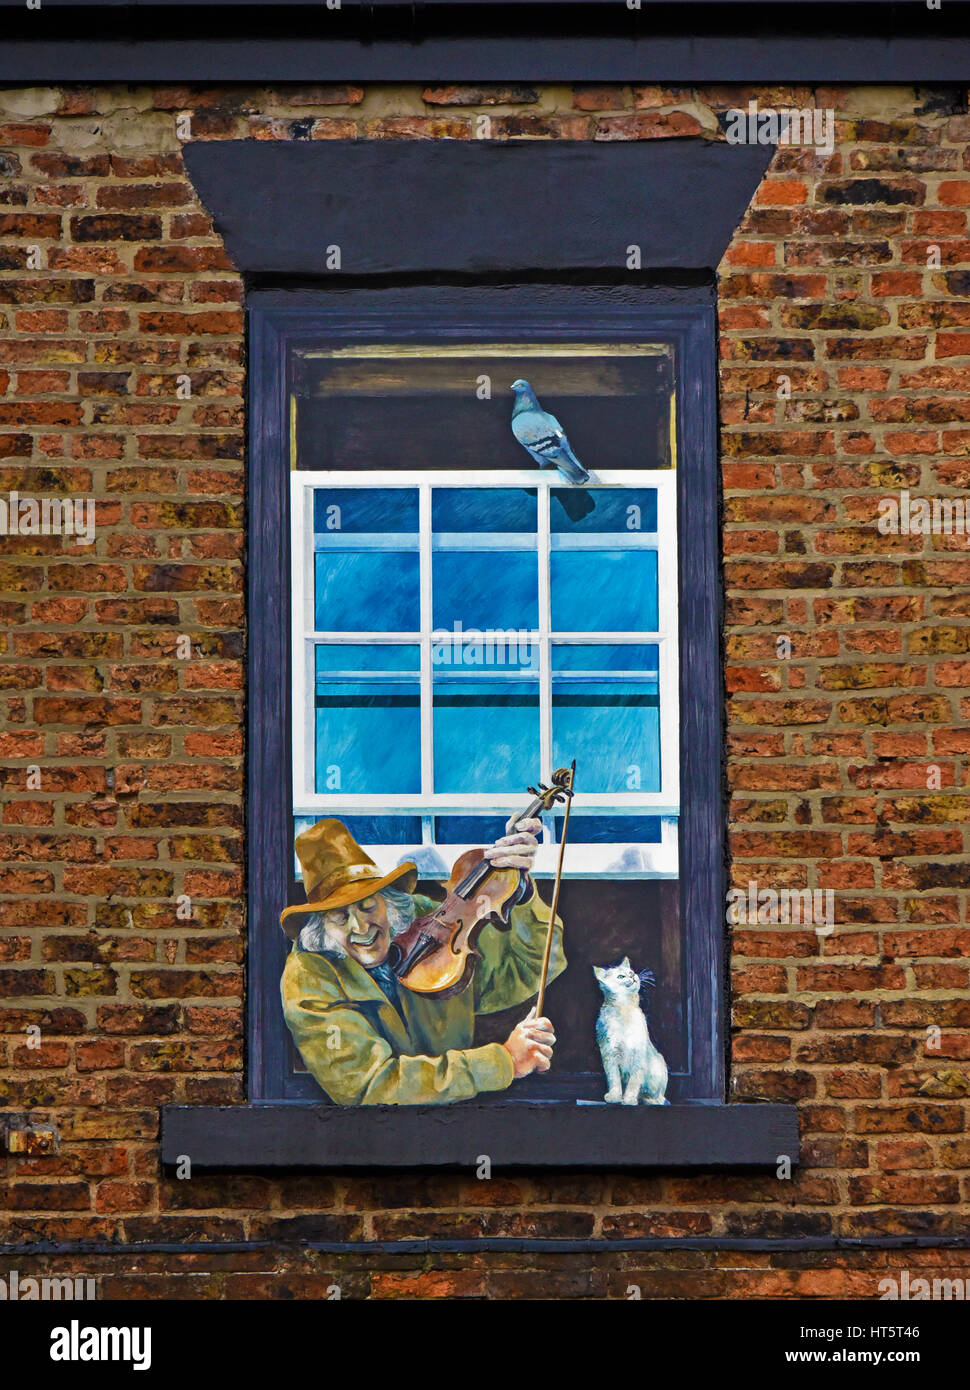 Musiker mit Geige, Katze und Pidgeon. Trompe-l ' œil gemalt Fenster. Knaresborough, North Yorkshire, England, Vereinigtes Königreich, Europa. Stockfoto